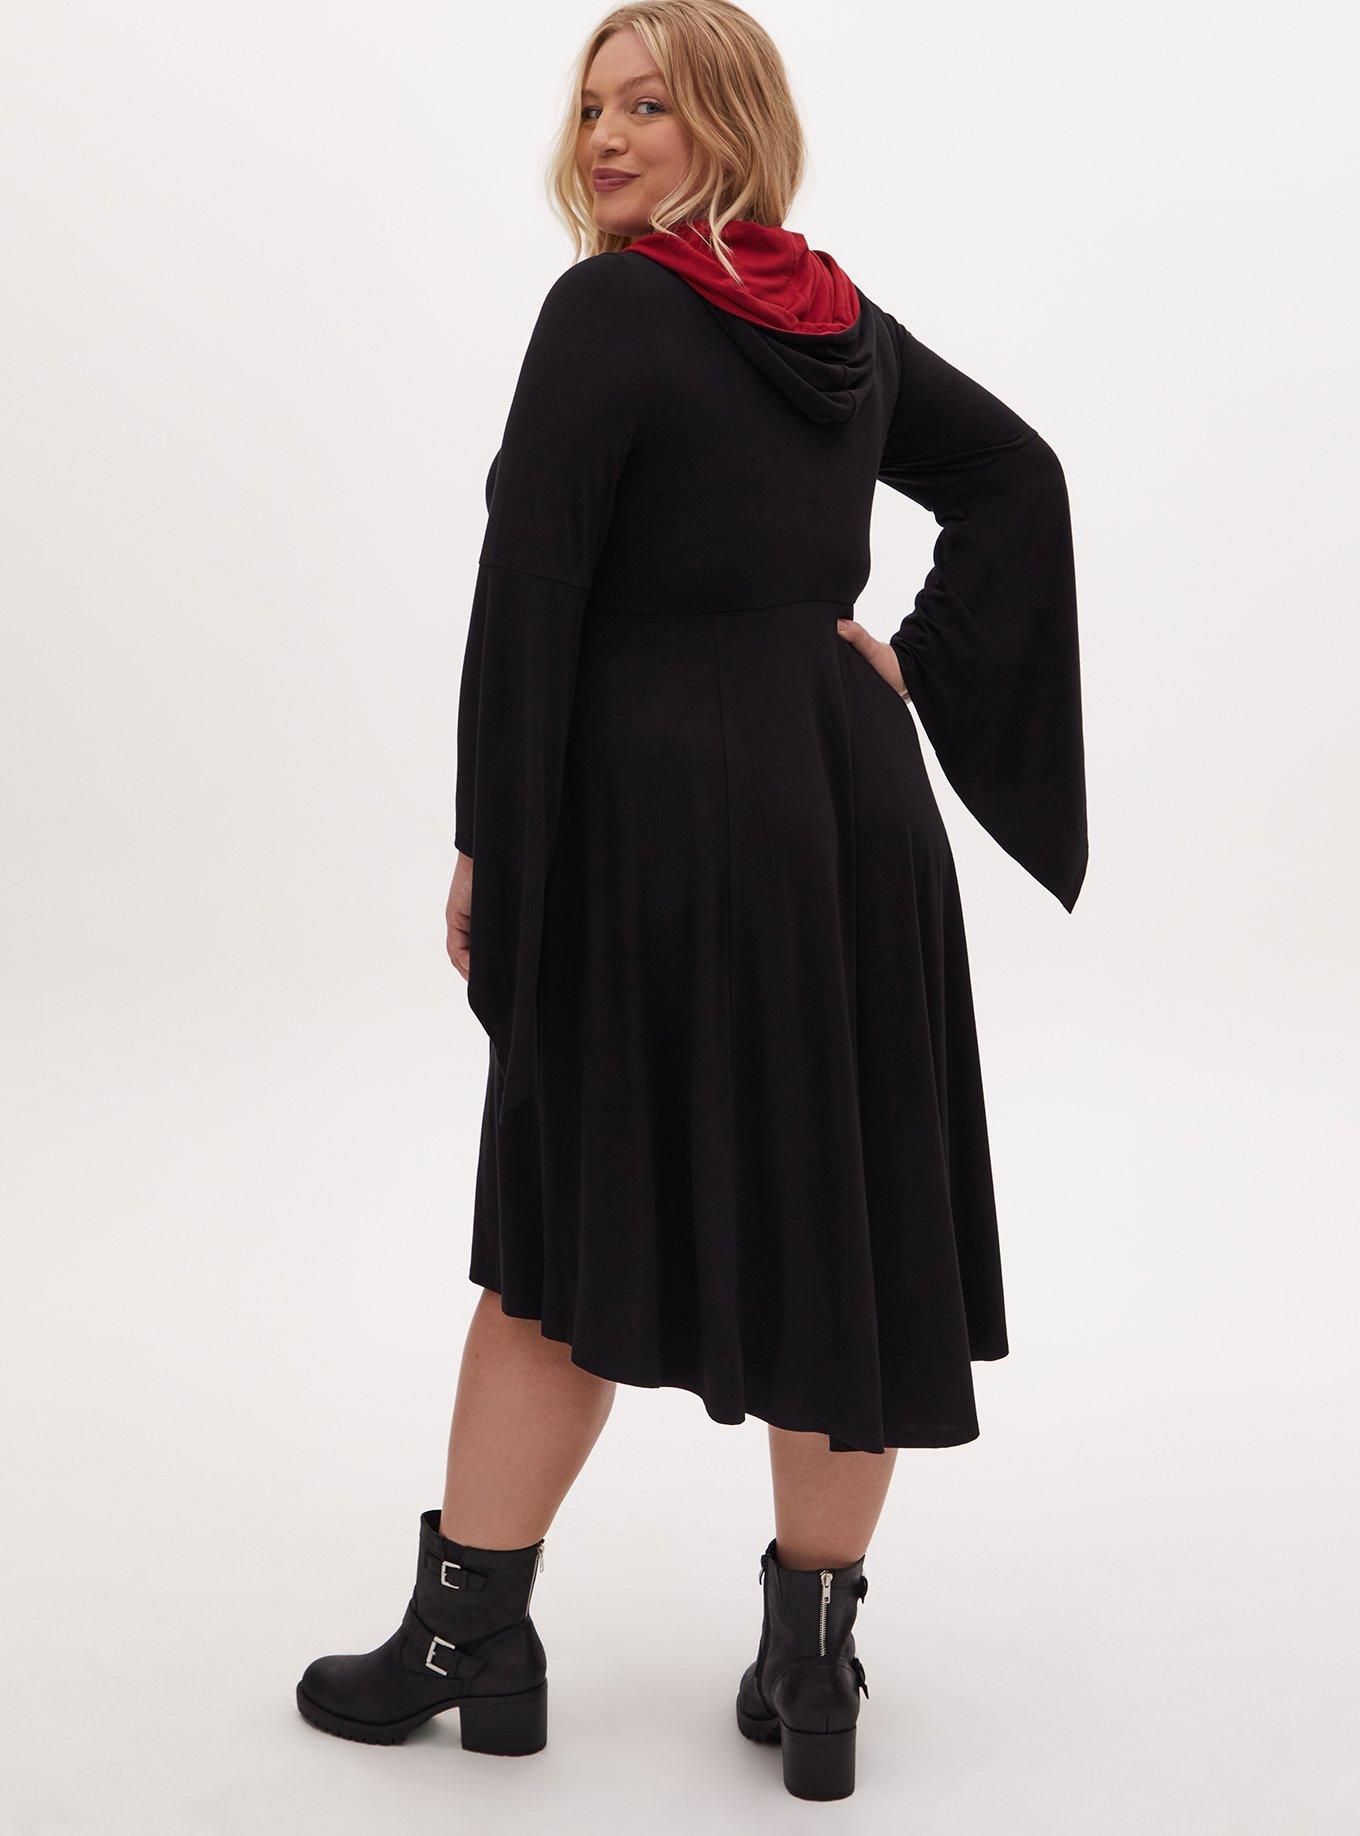 Plus Size - Harry Potter Gryffindor Crest Black Hi-Lo Hooded Dress